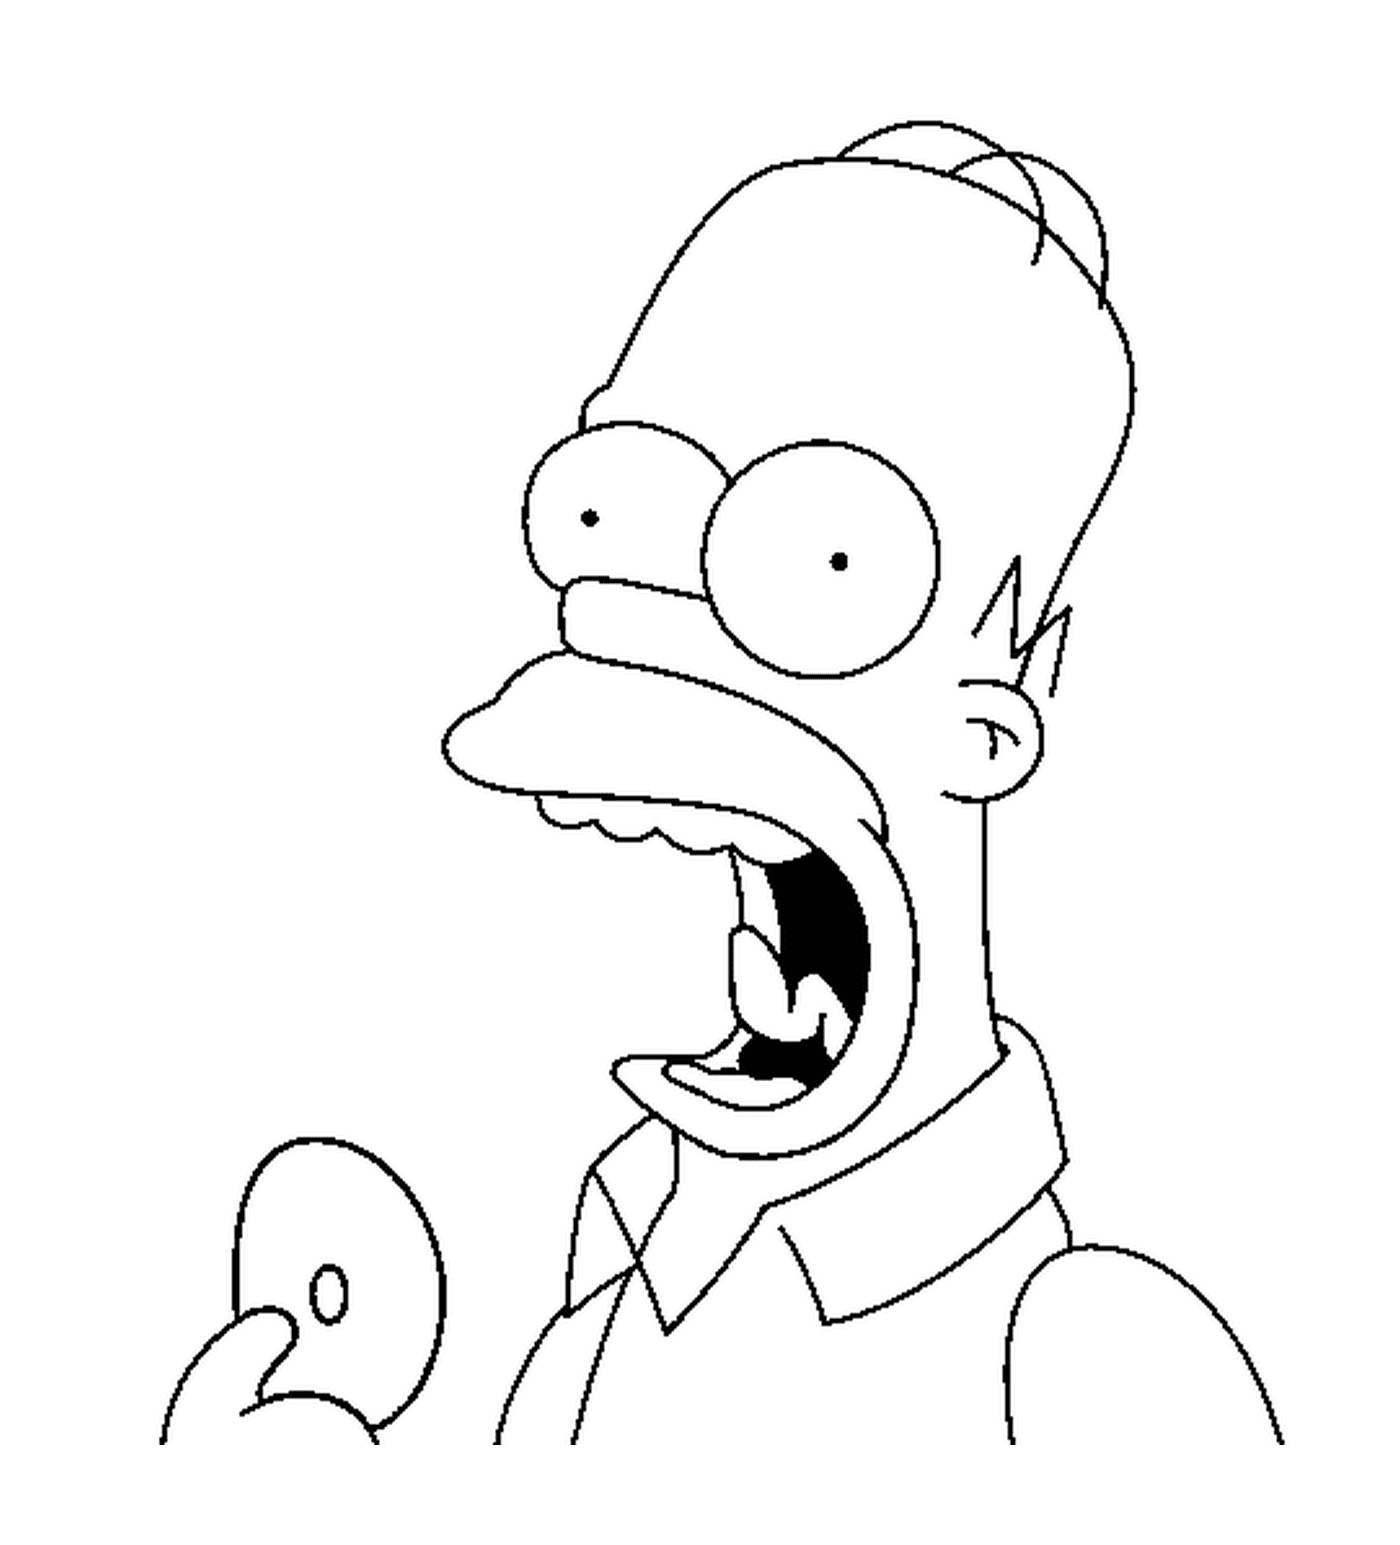  Homero saborea una deliciosa rosquilla 